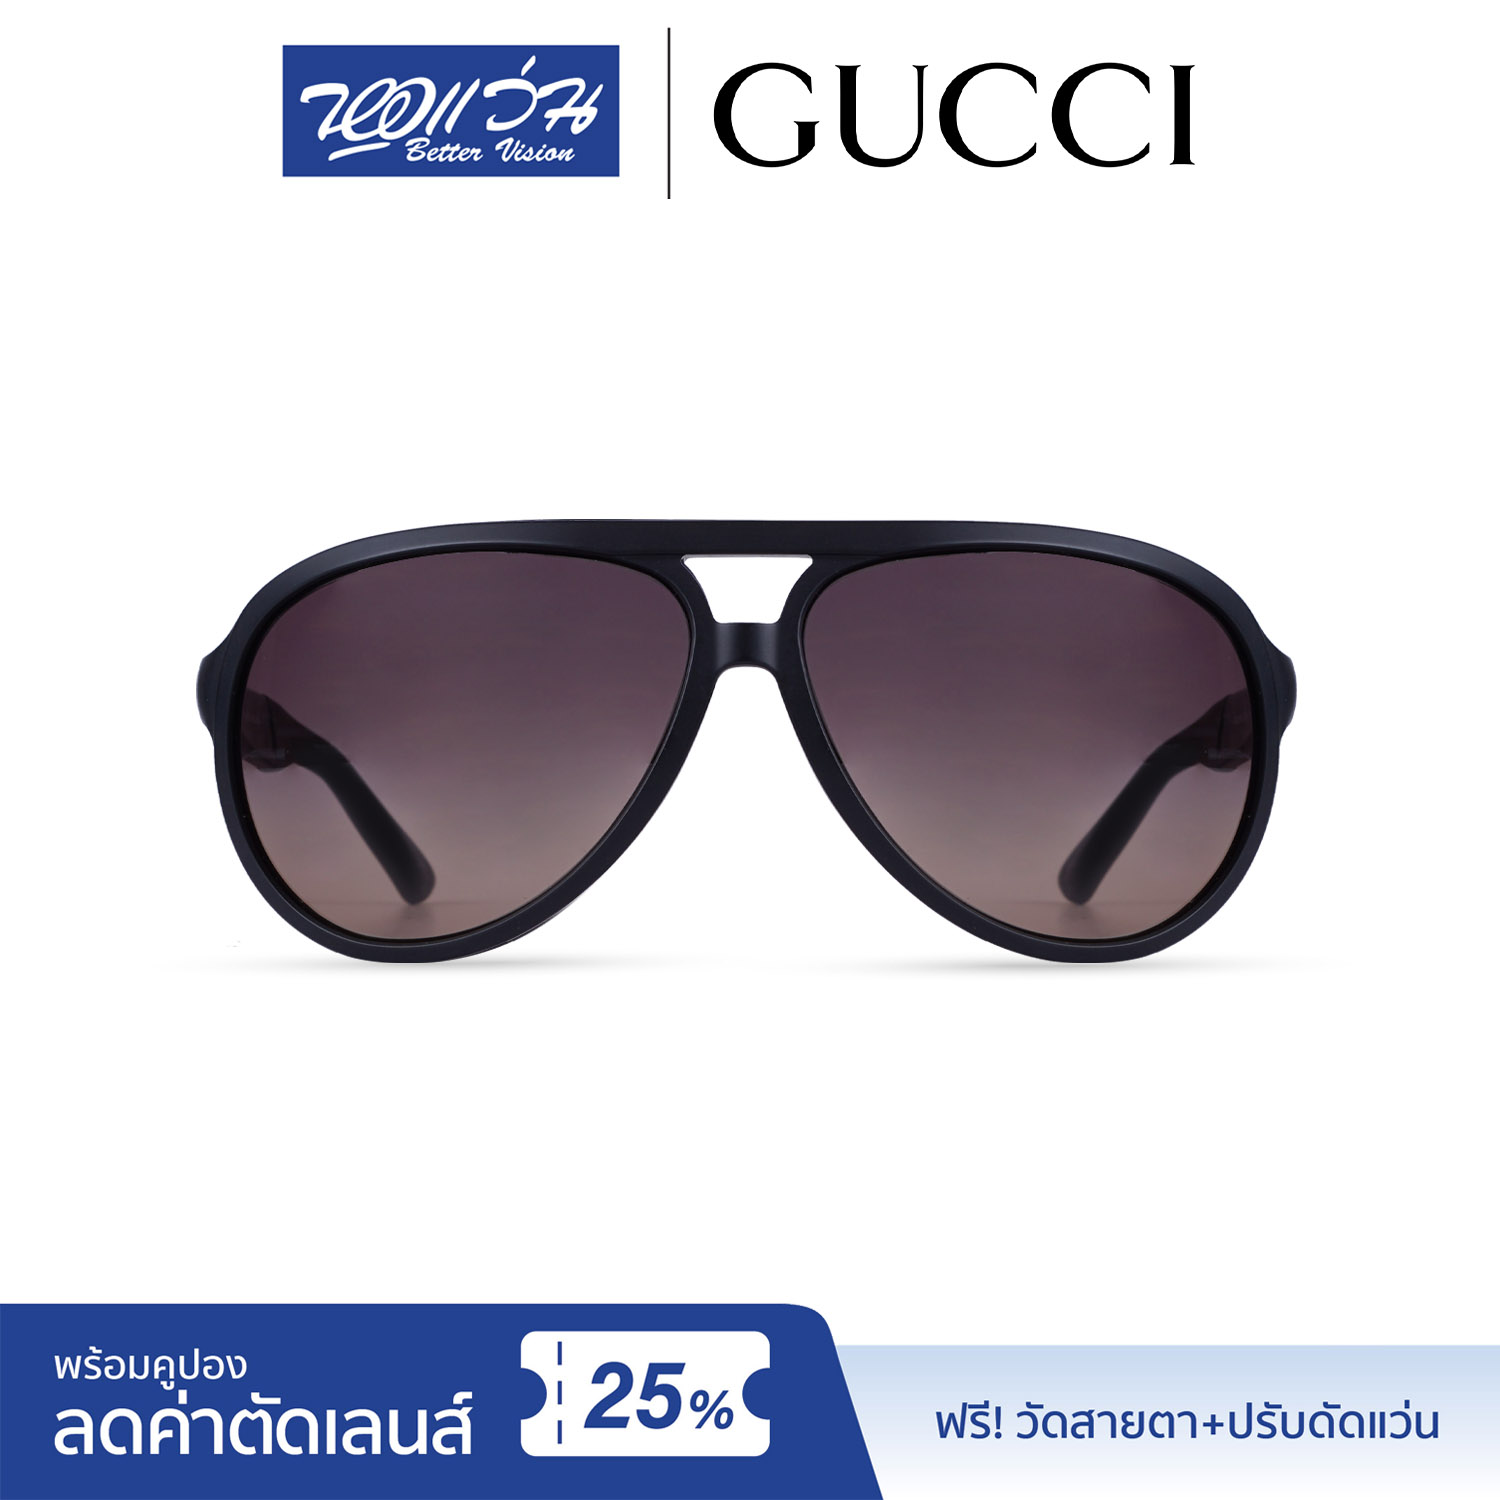 แว่นกันแดด กุชชี่ Gucci Sunglasses  แถมฟรีส่วนลดค่าตัดเลนส์ 25% free 25% lens discount รุ่น FGC1030